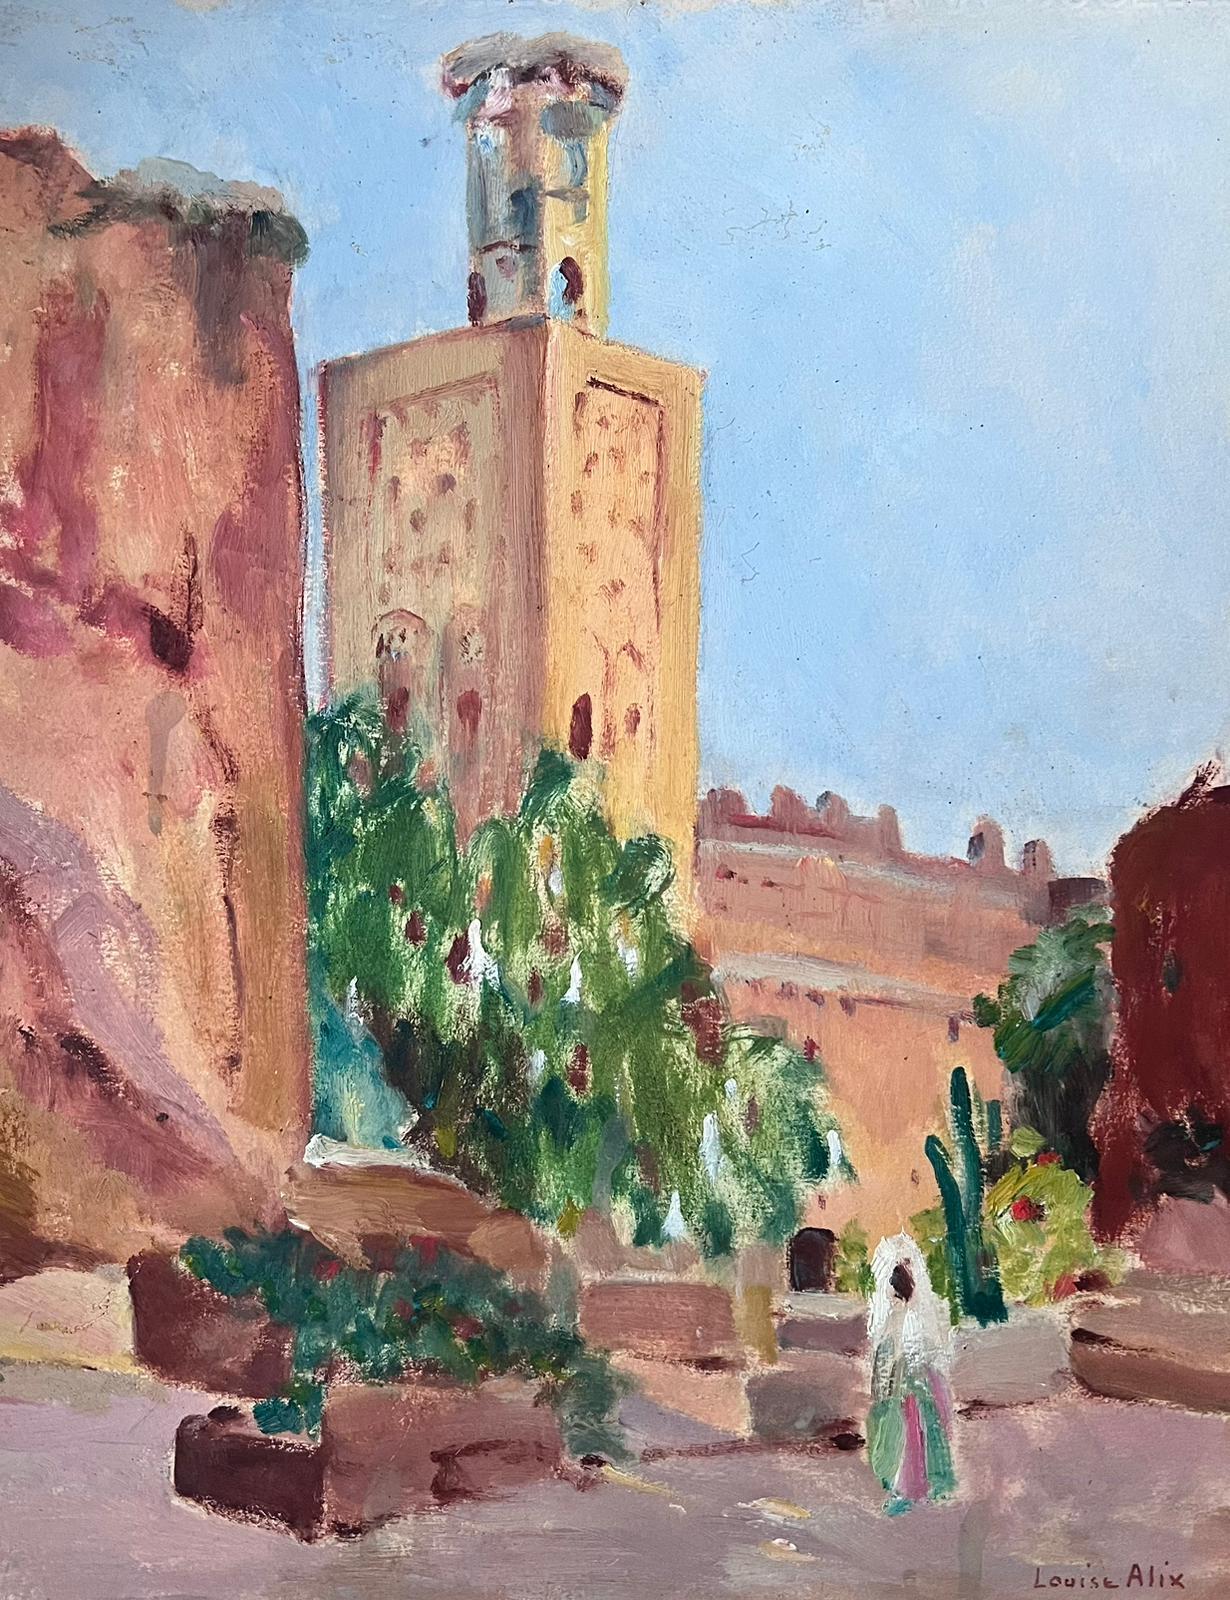 Huile impressionniste française des années 1930 signée Bell Tower and Figure Town - Painting de Louise Alix